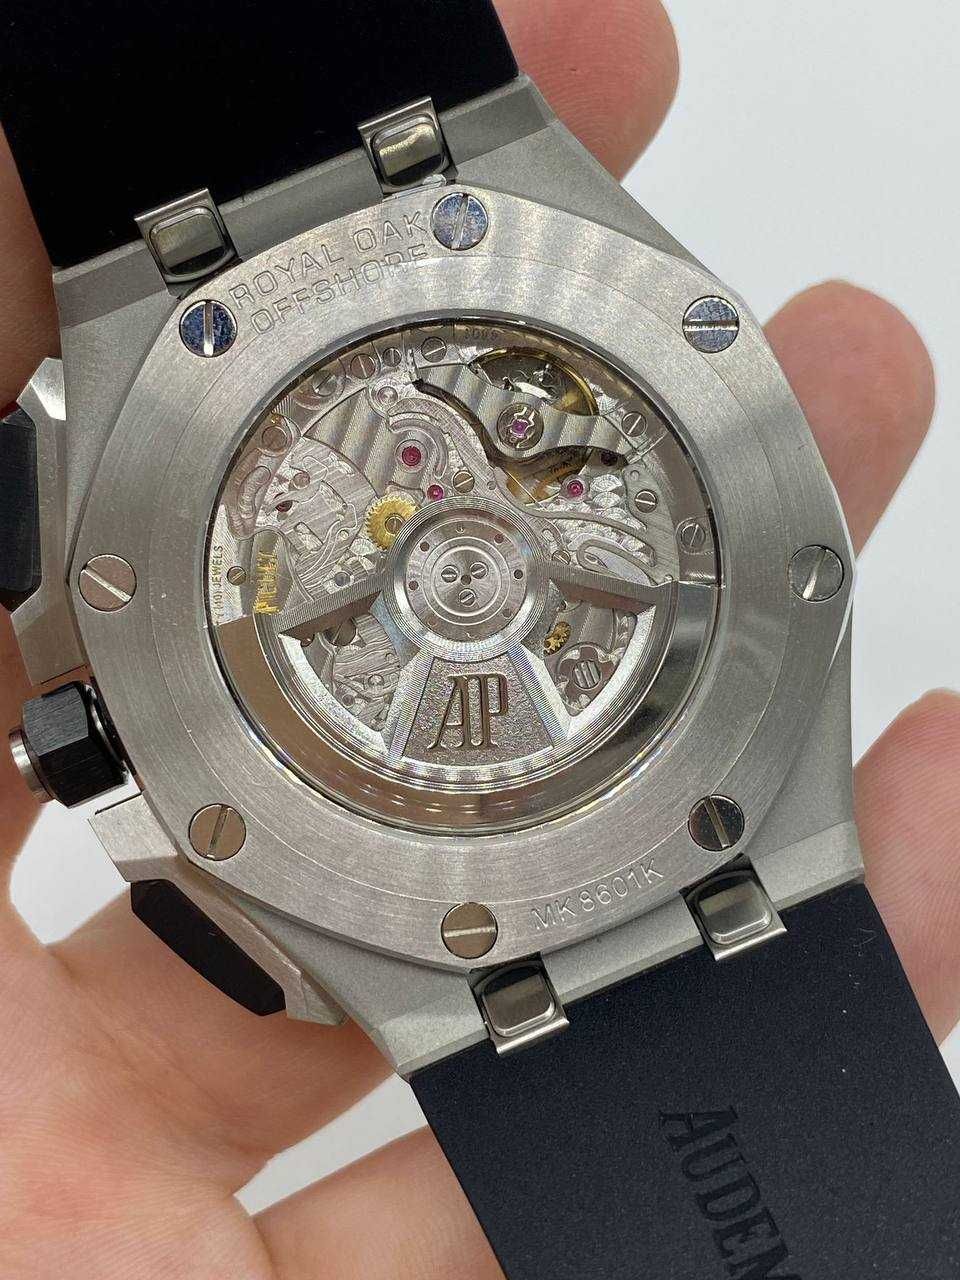 Audemars Piguet Royal Oak Offshore Chronograph Watch Black Dial 43mm